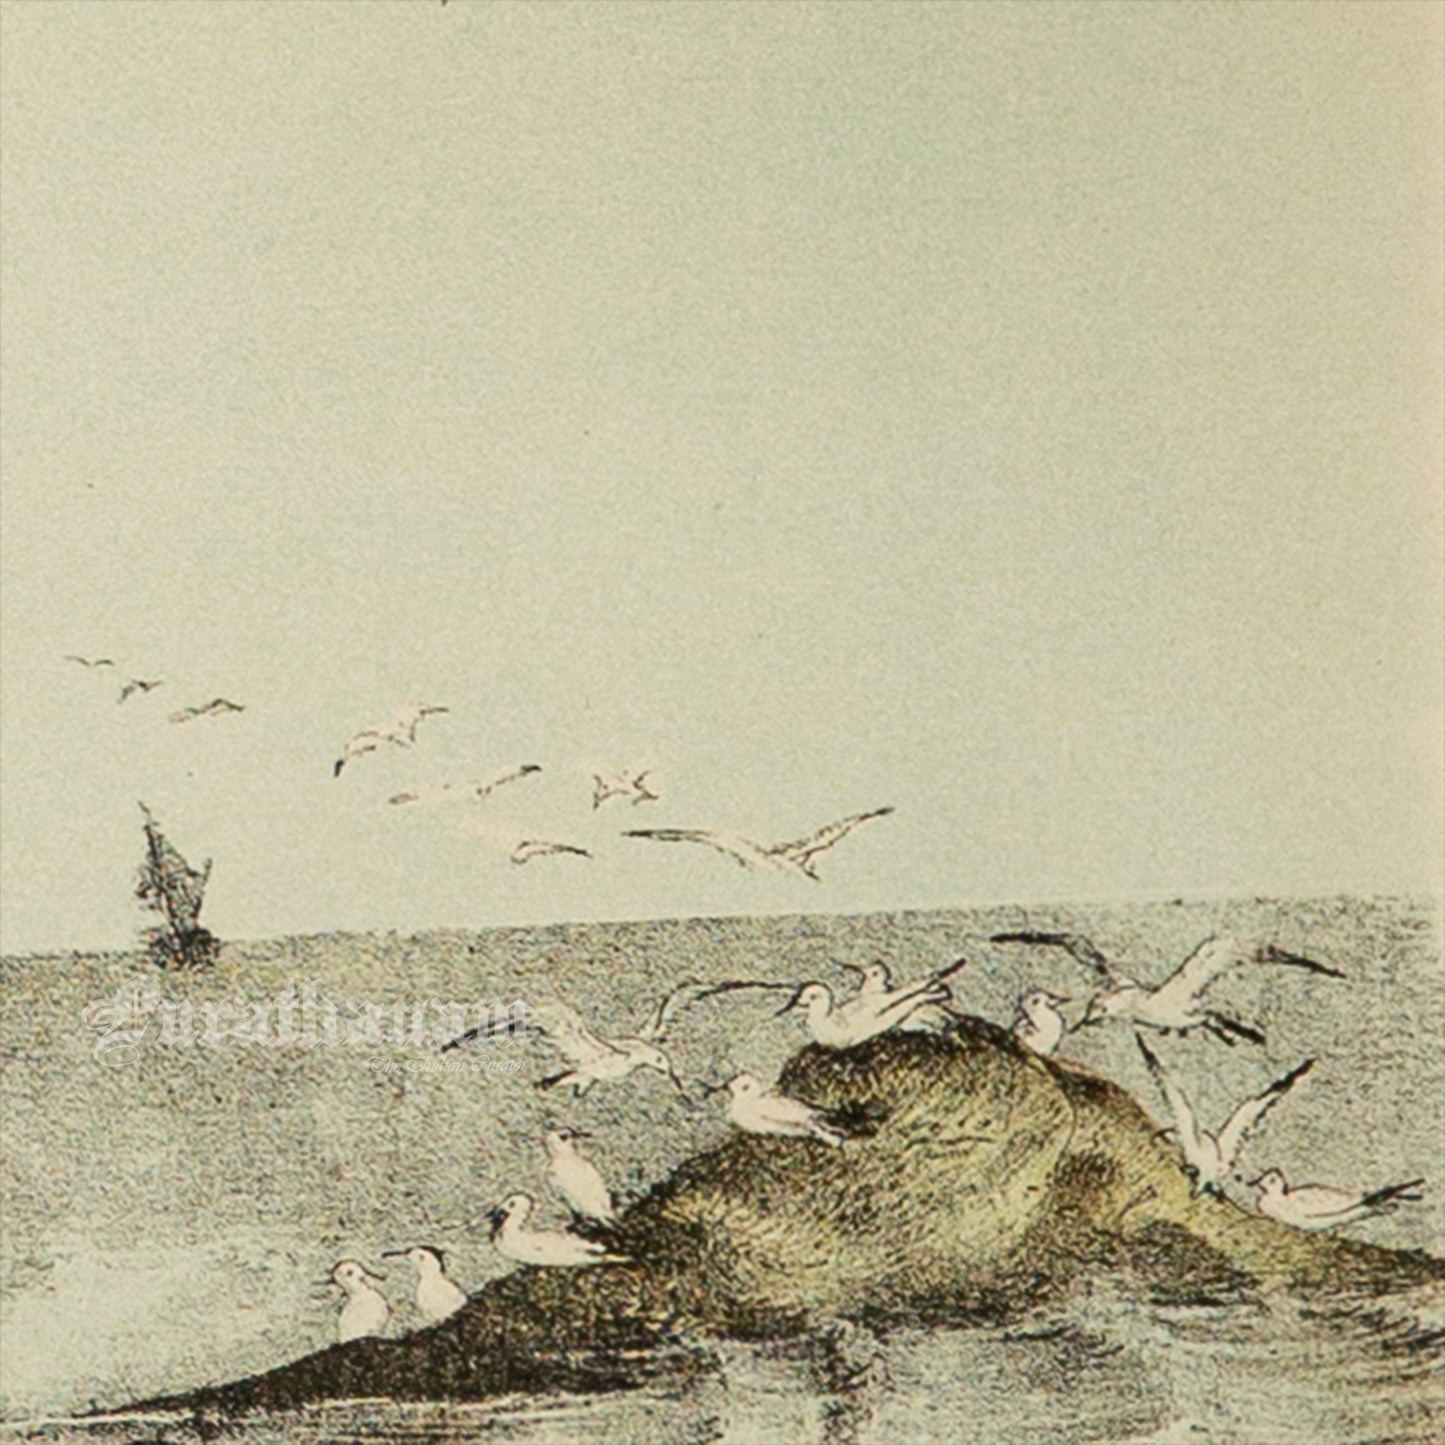 Bird - Chromo lithograph print (Plate - XI) by Theodore Jasper -  Bird Art / Avian Art